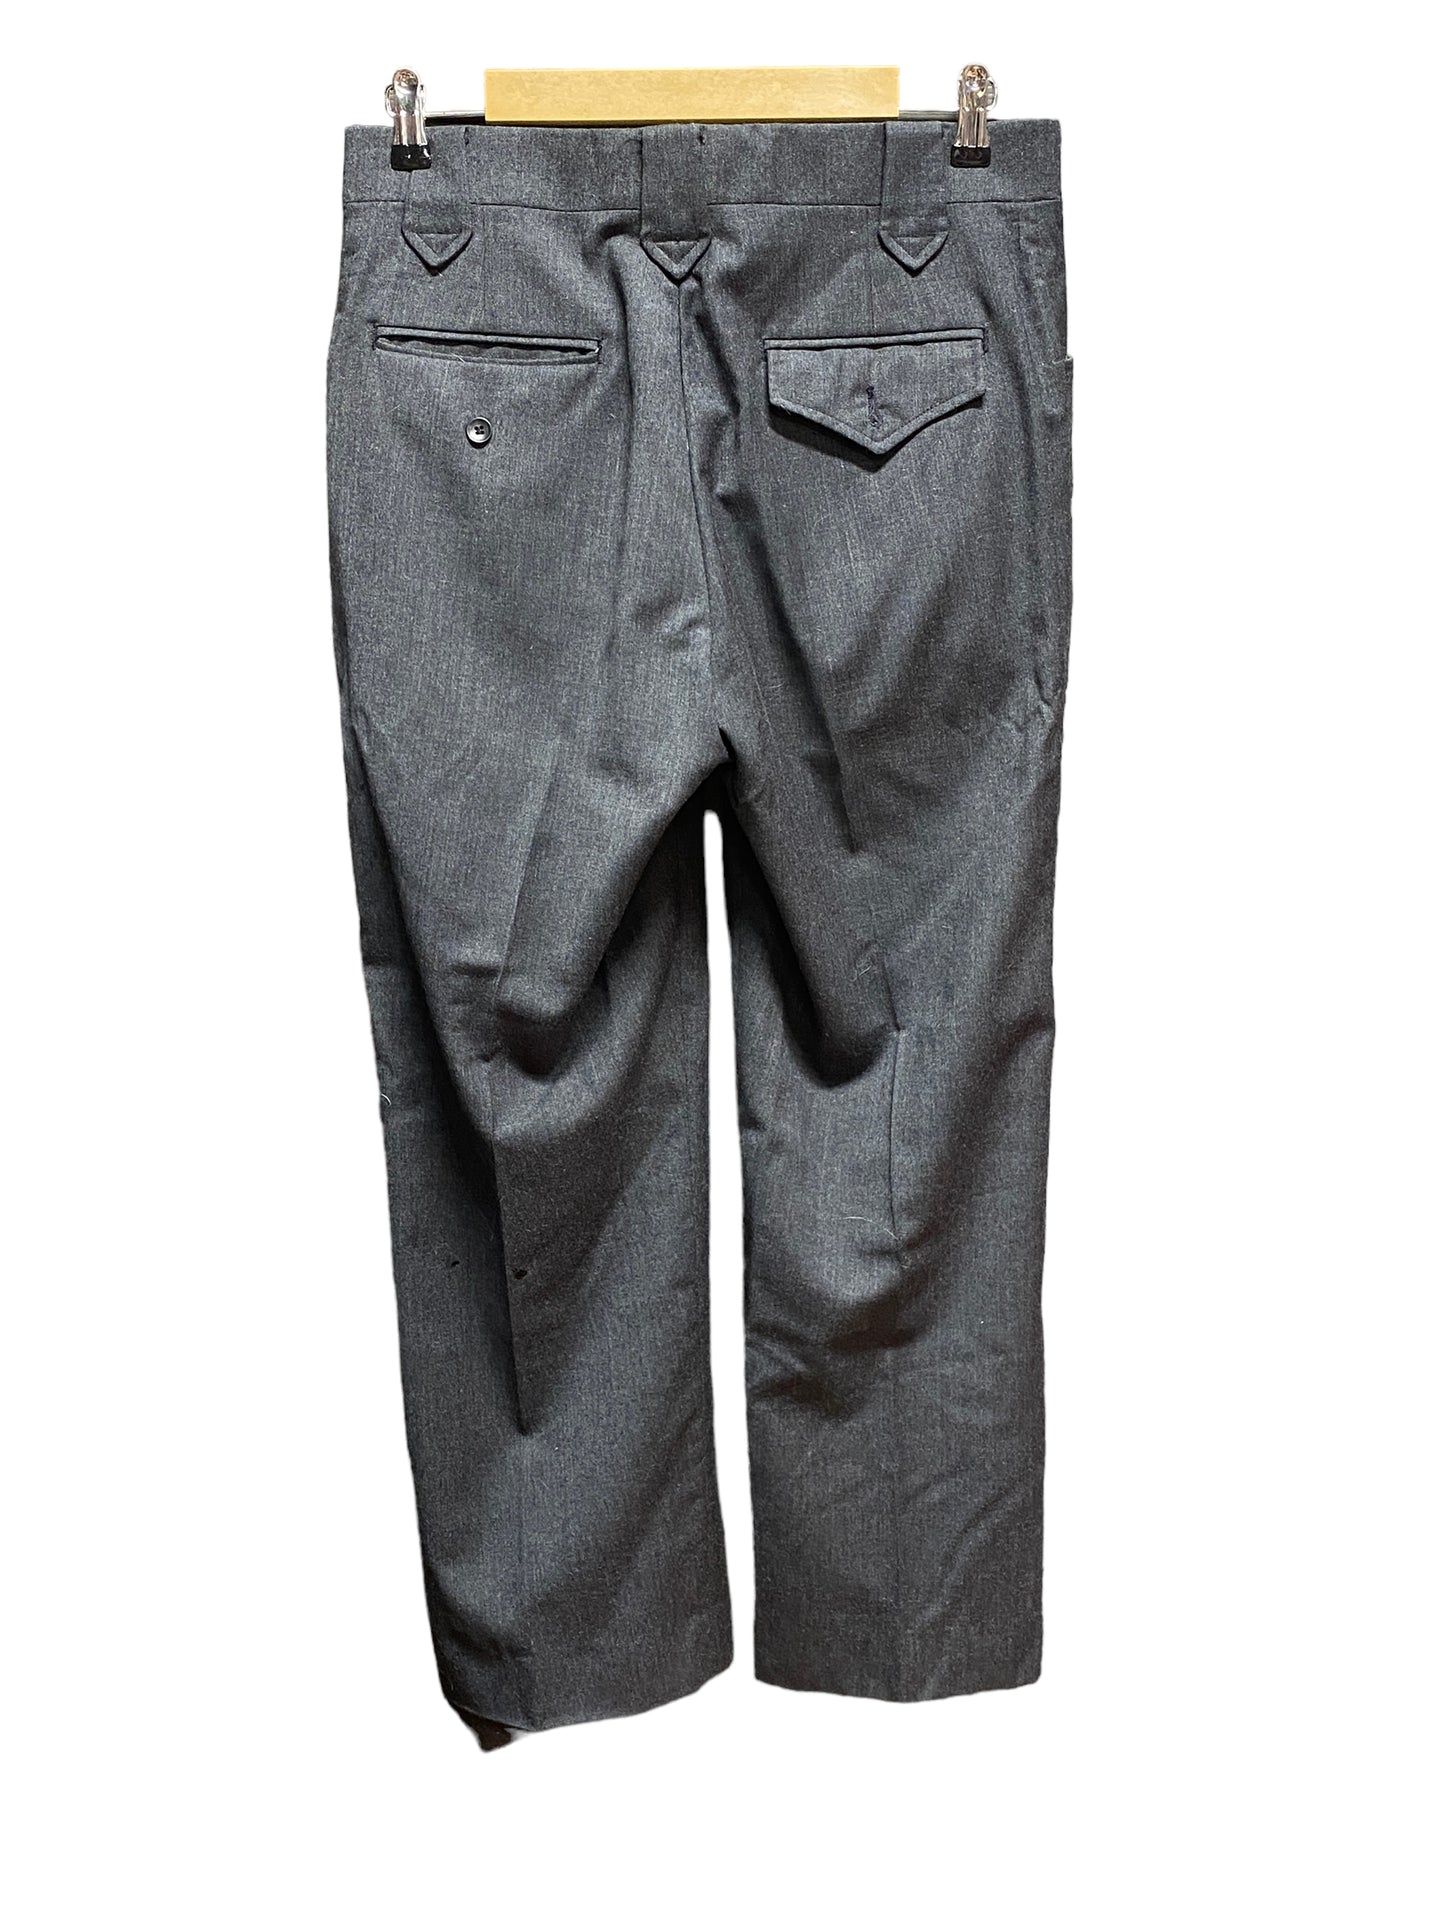 Vintage Pendleton Wool Trousers Size 32x29